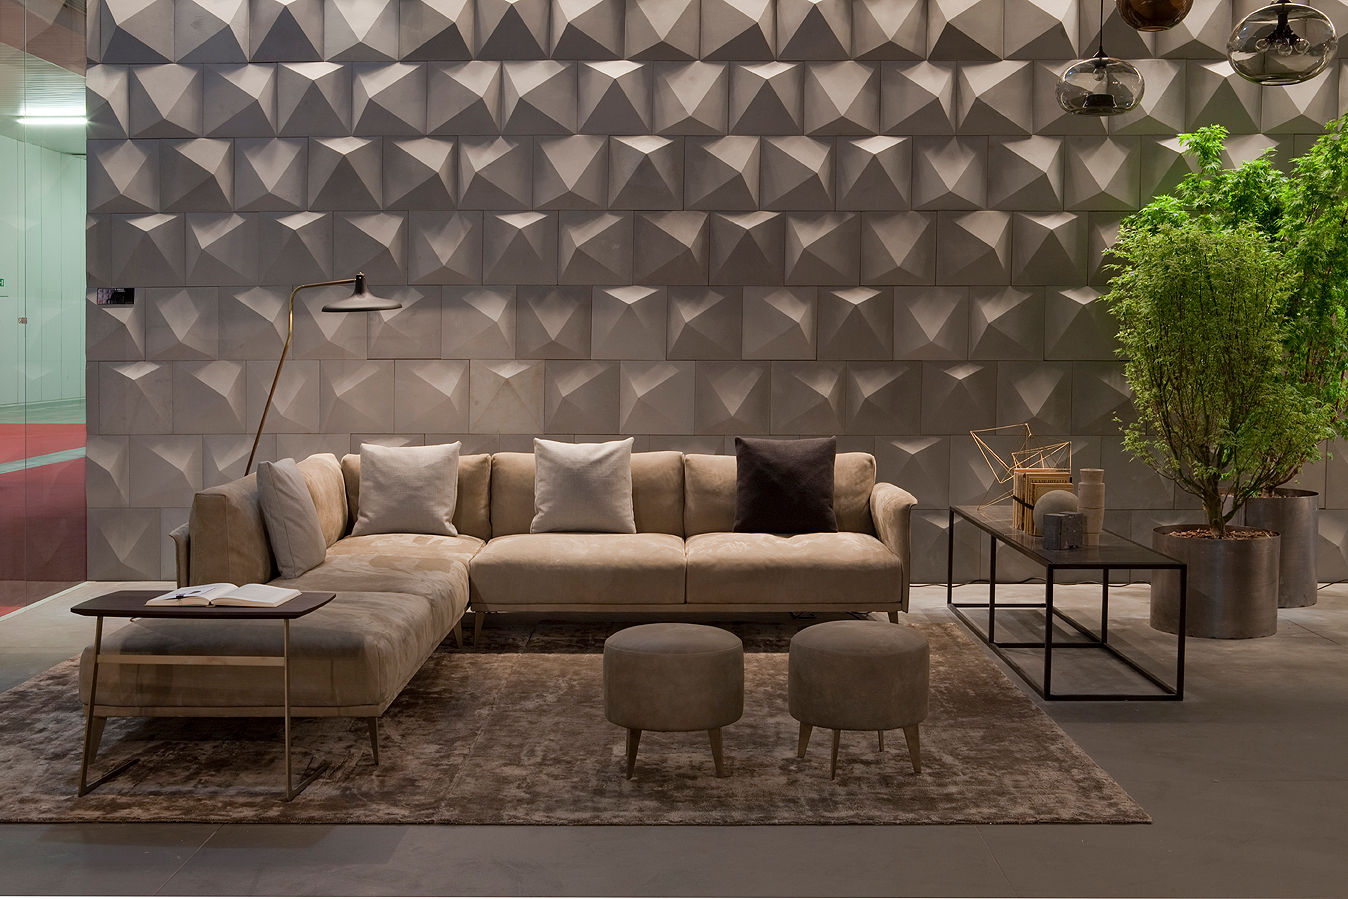 Industrial design - Doimo sofas - Stile libero, IMAGO DESIGN IMAGO DESIGN Paredes y pisos de estilo moderno Revestimientos de paredes y suelos